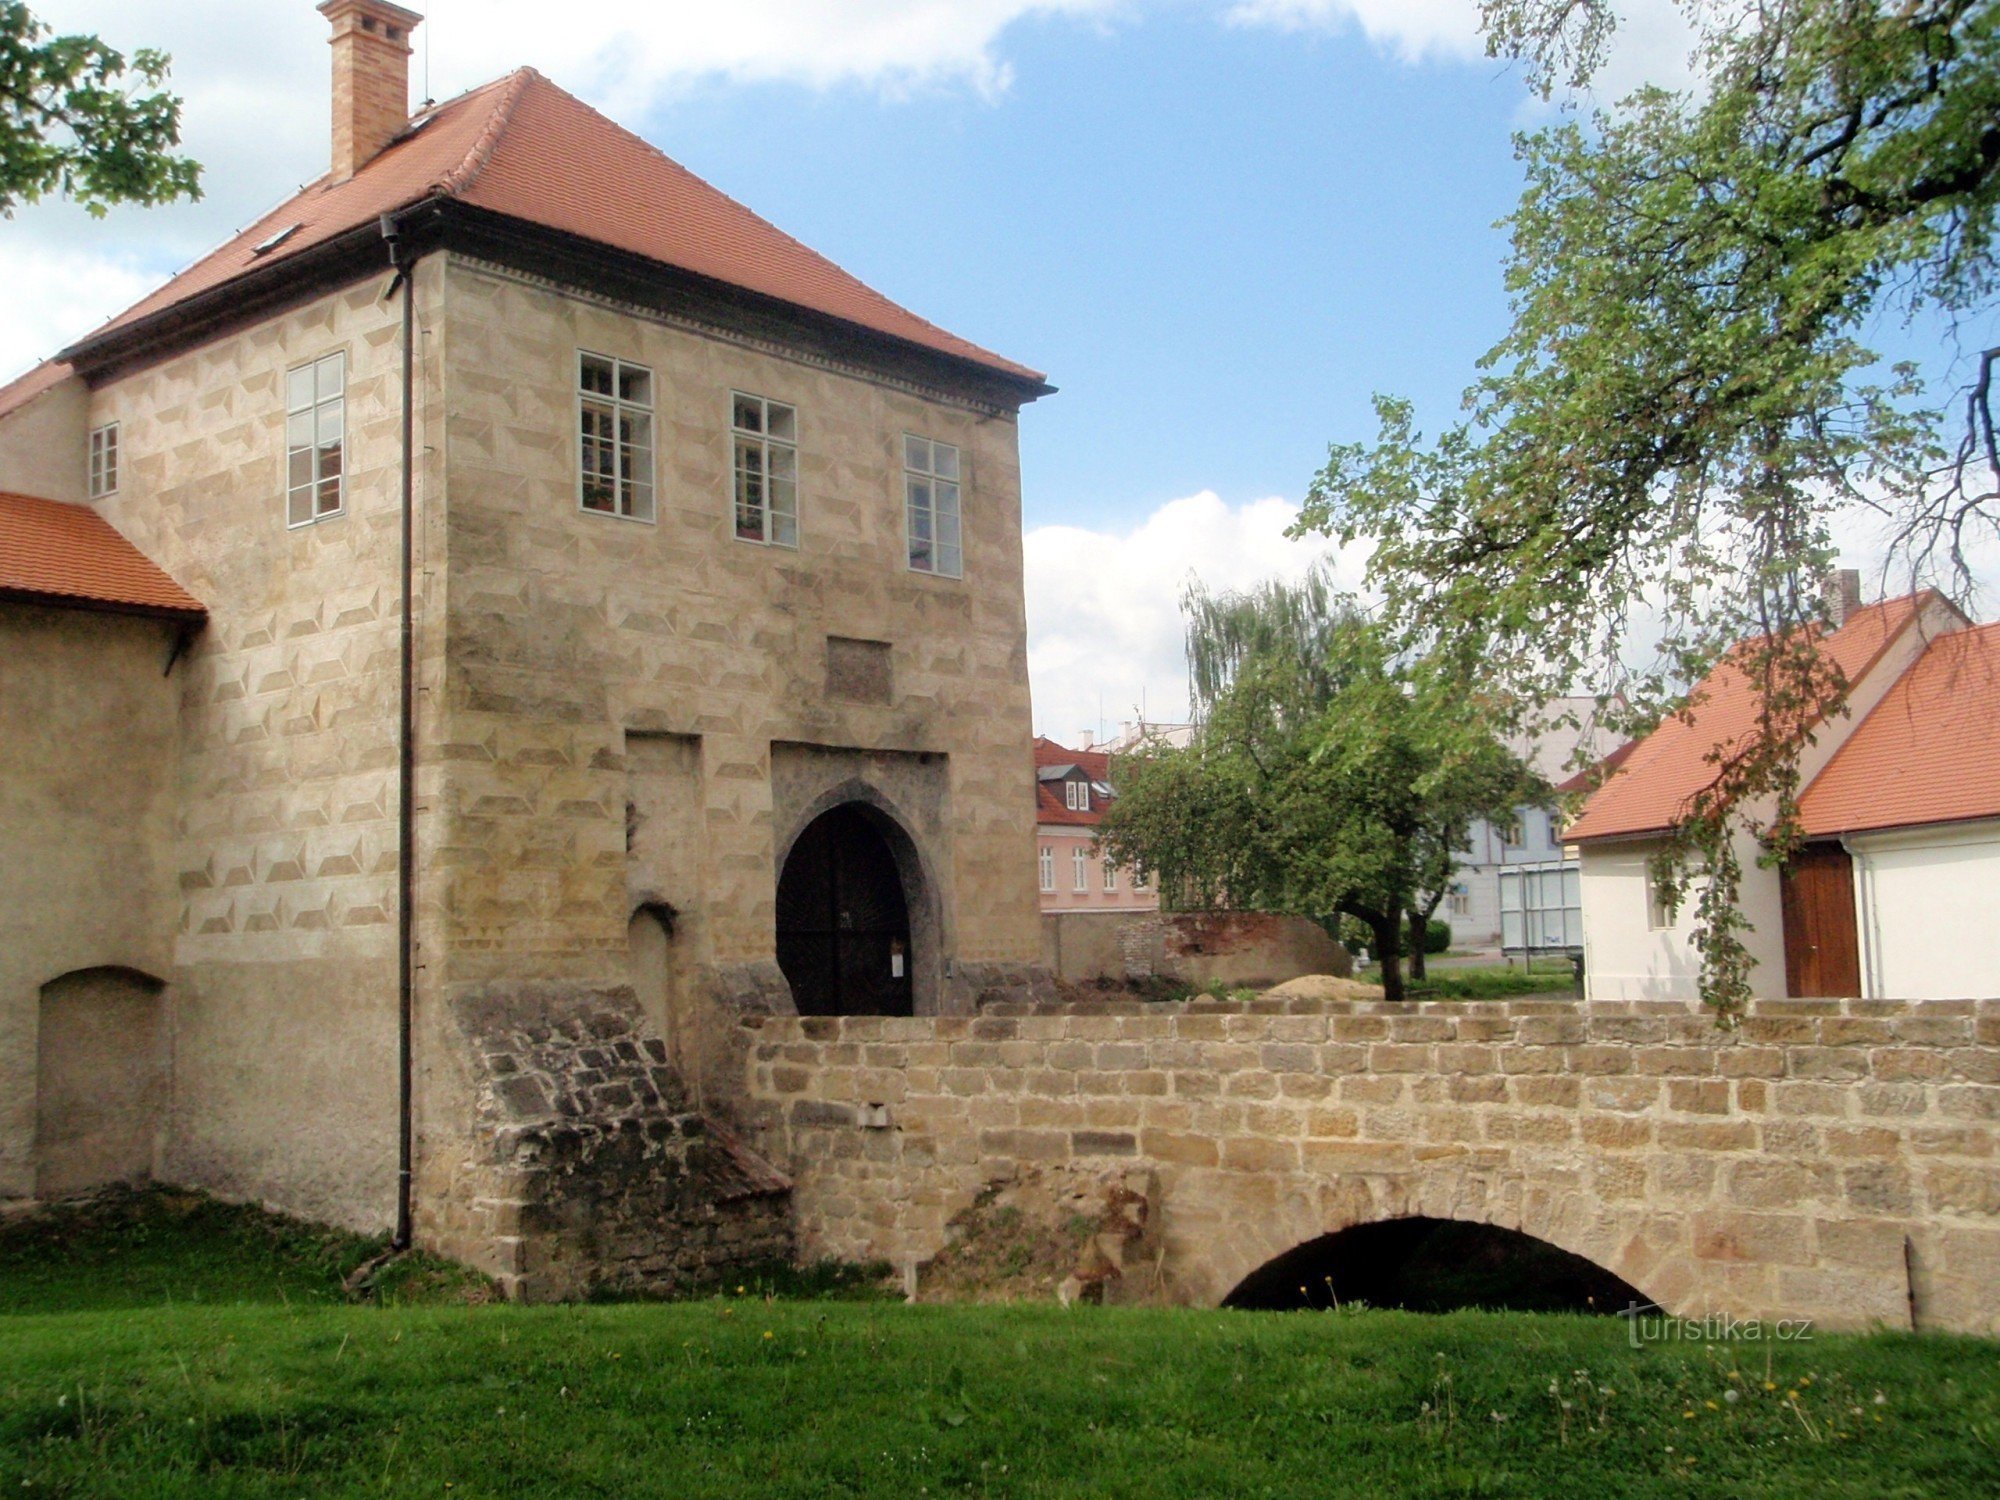 Castillo de Lipý - puerta de entrada